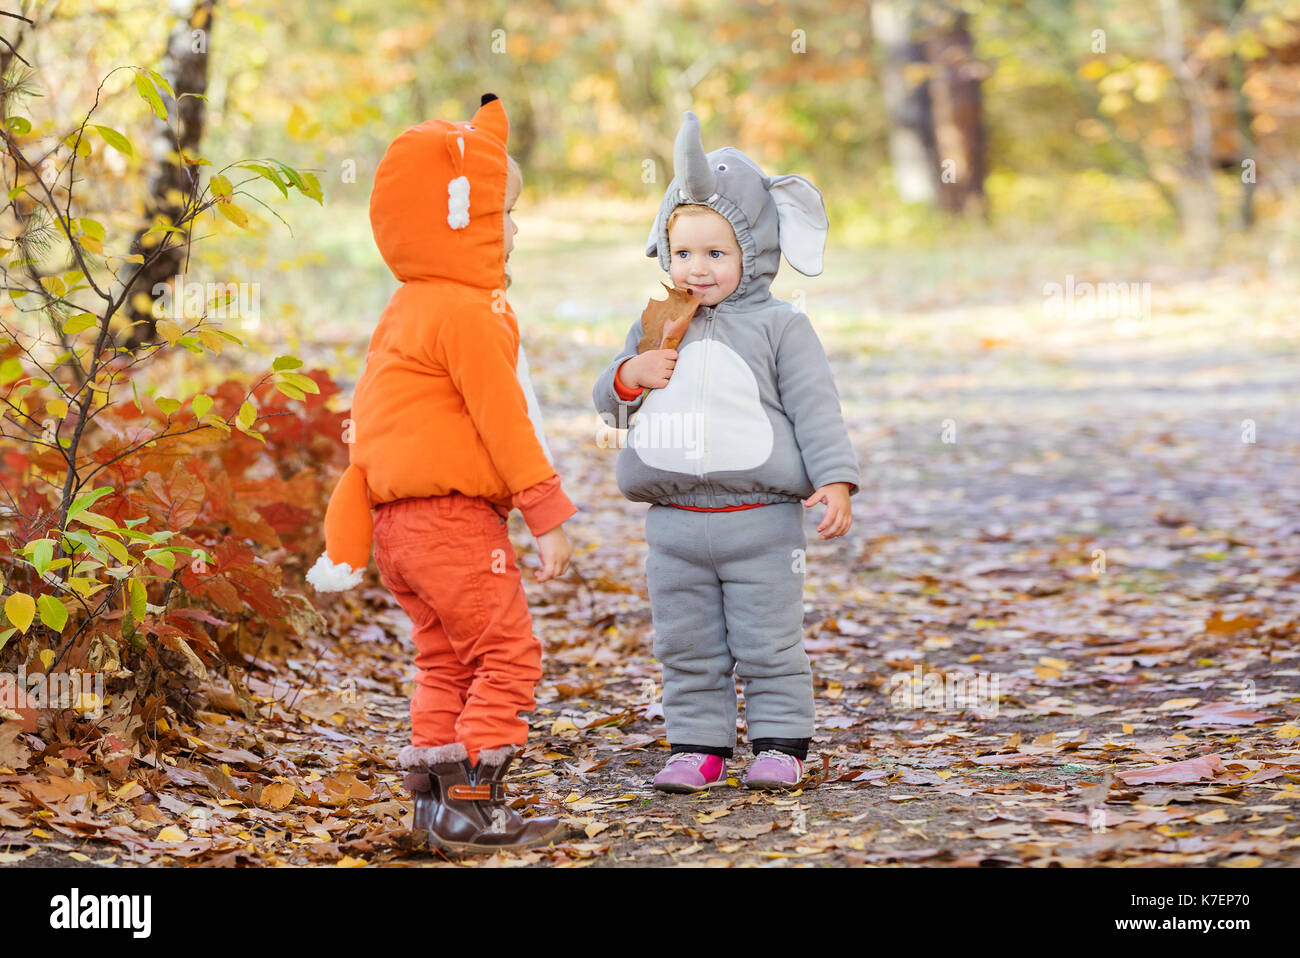 Niños pequeños vestidos con trajes de animales, niño vestido como zorro,  niña como elefante, jugando en el bosque de otoño Fotografía de stock -  Alamy